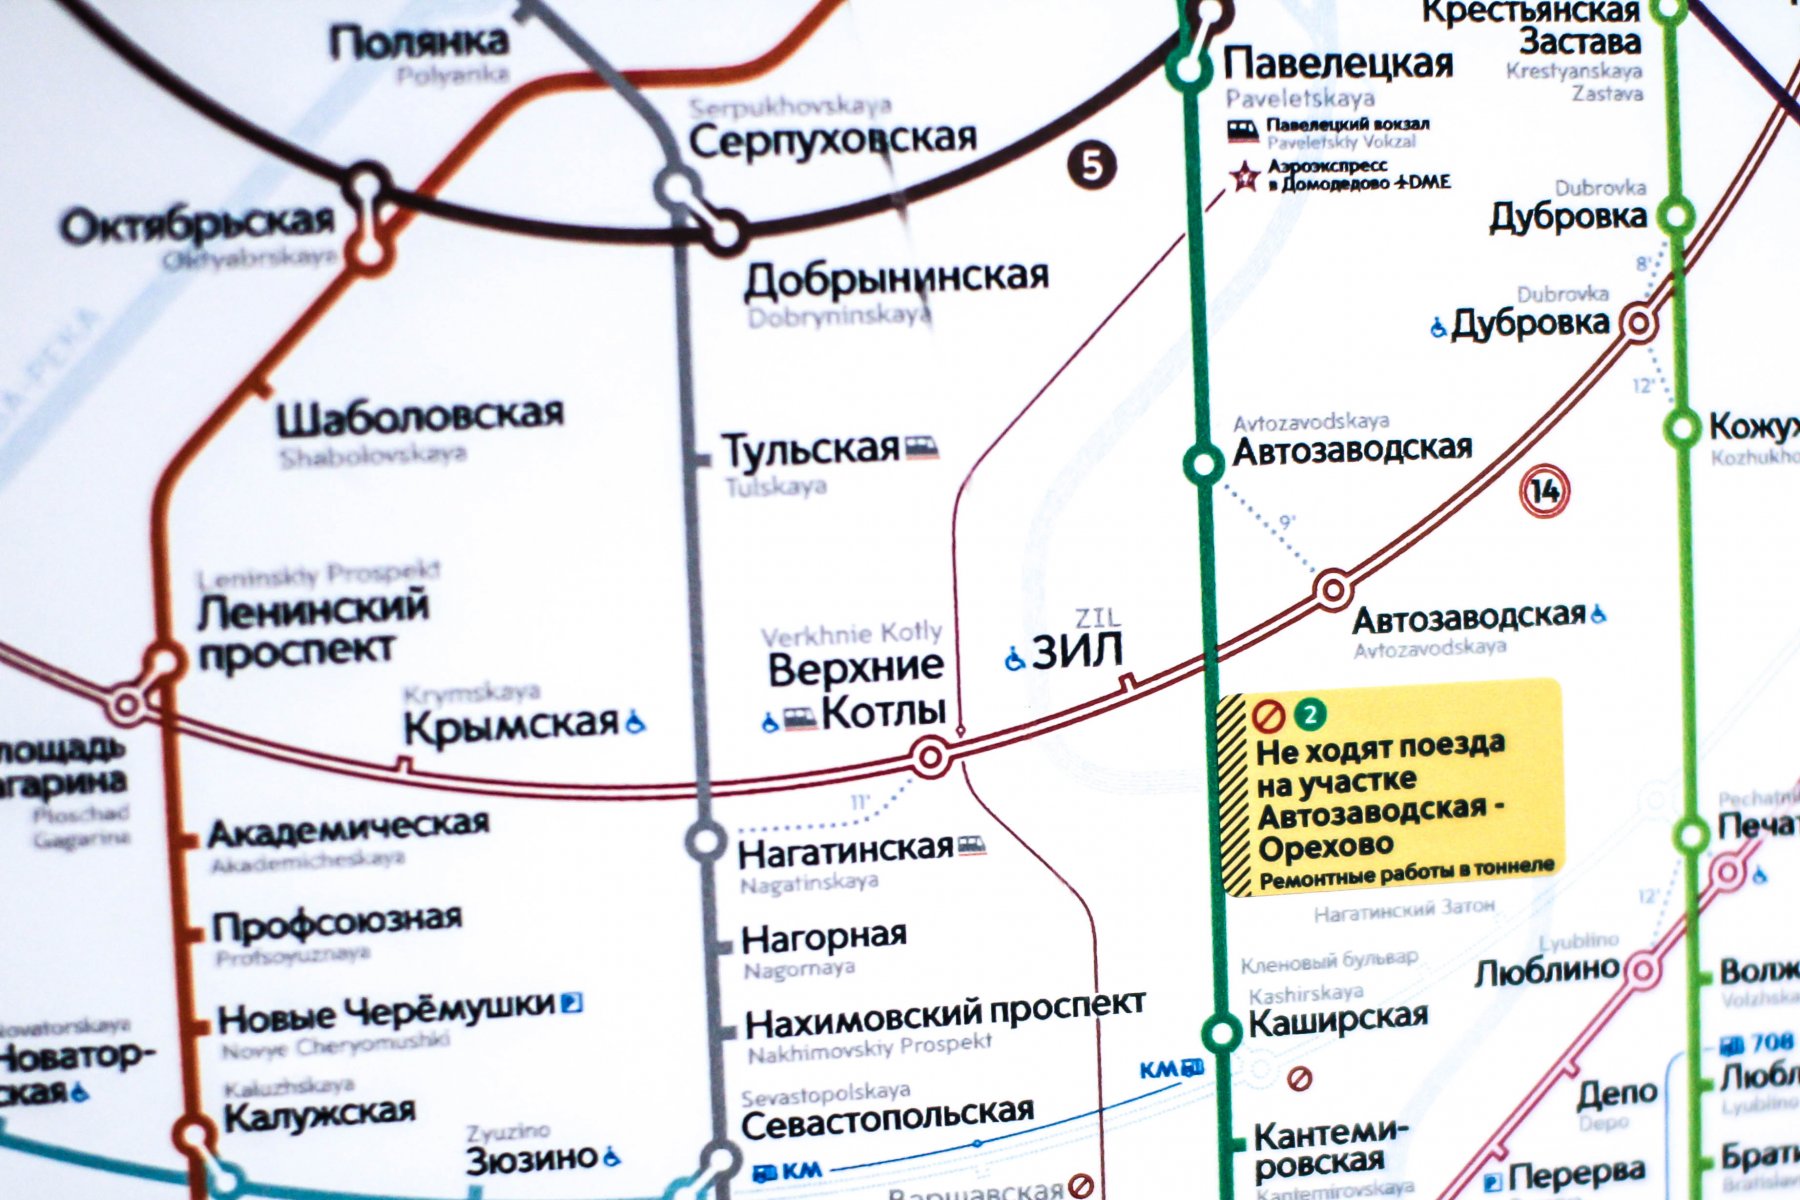 Режим работы ряда станций метрополитена Москвы 23 февраля может ситуативно меняться